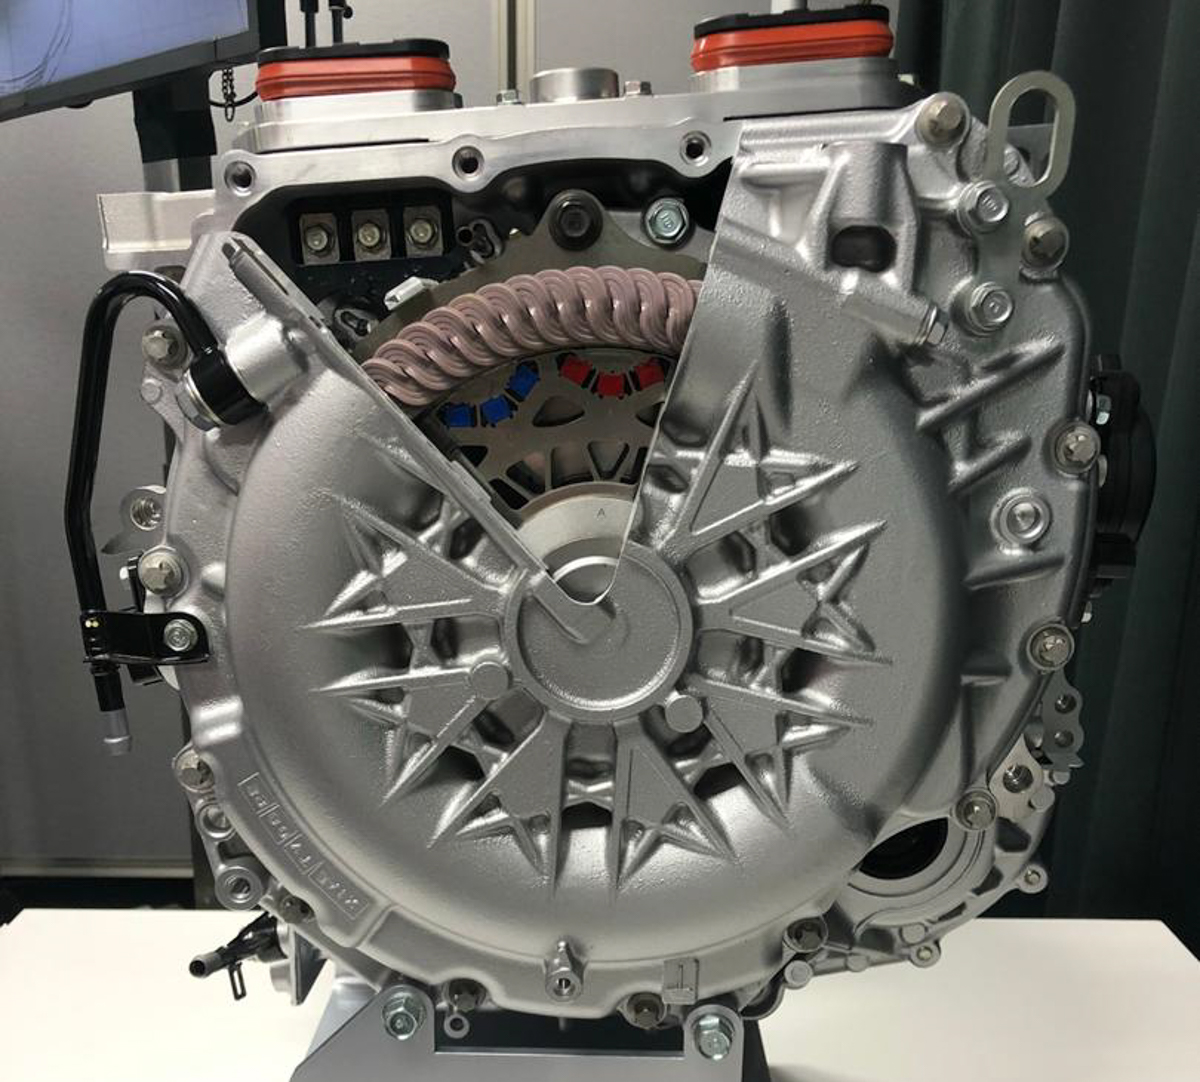 新一代 Honda Fit 的 1.5L+i-MMD 混合动力引擎究竟有什么特别